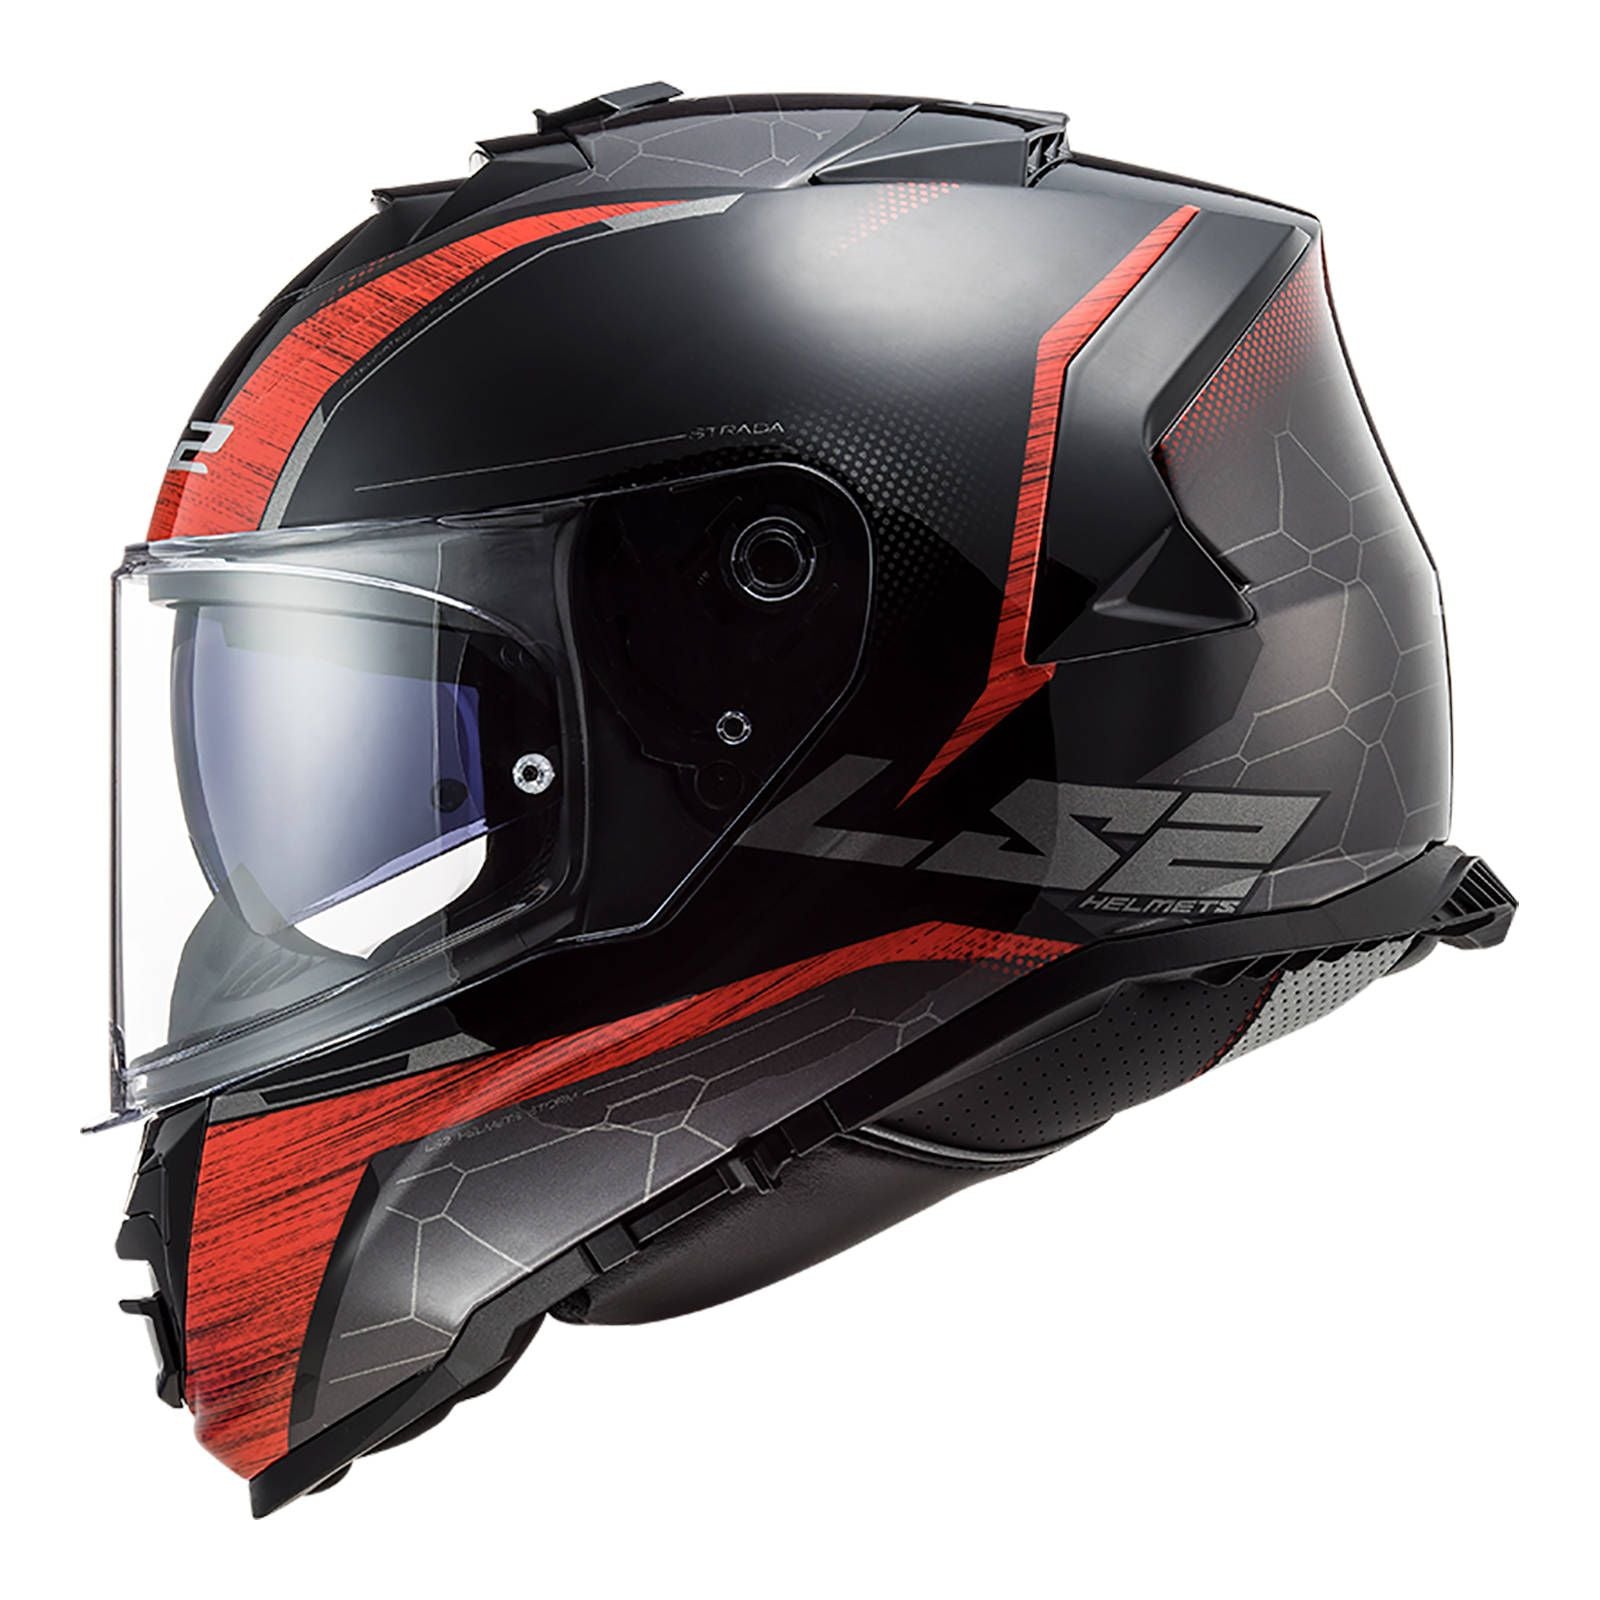 New LS2 FF800 Storm Classy Helmet - Black / Red (2XL) #LS2FF800CLASBKR2XL